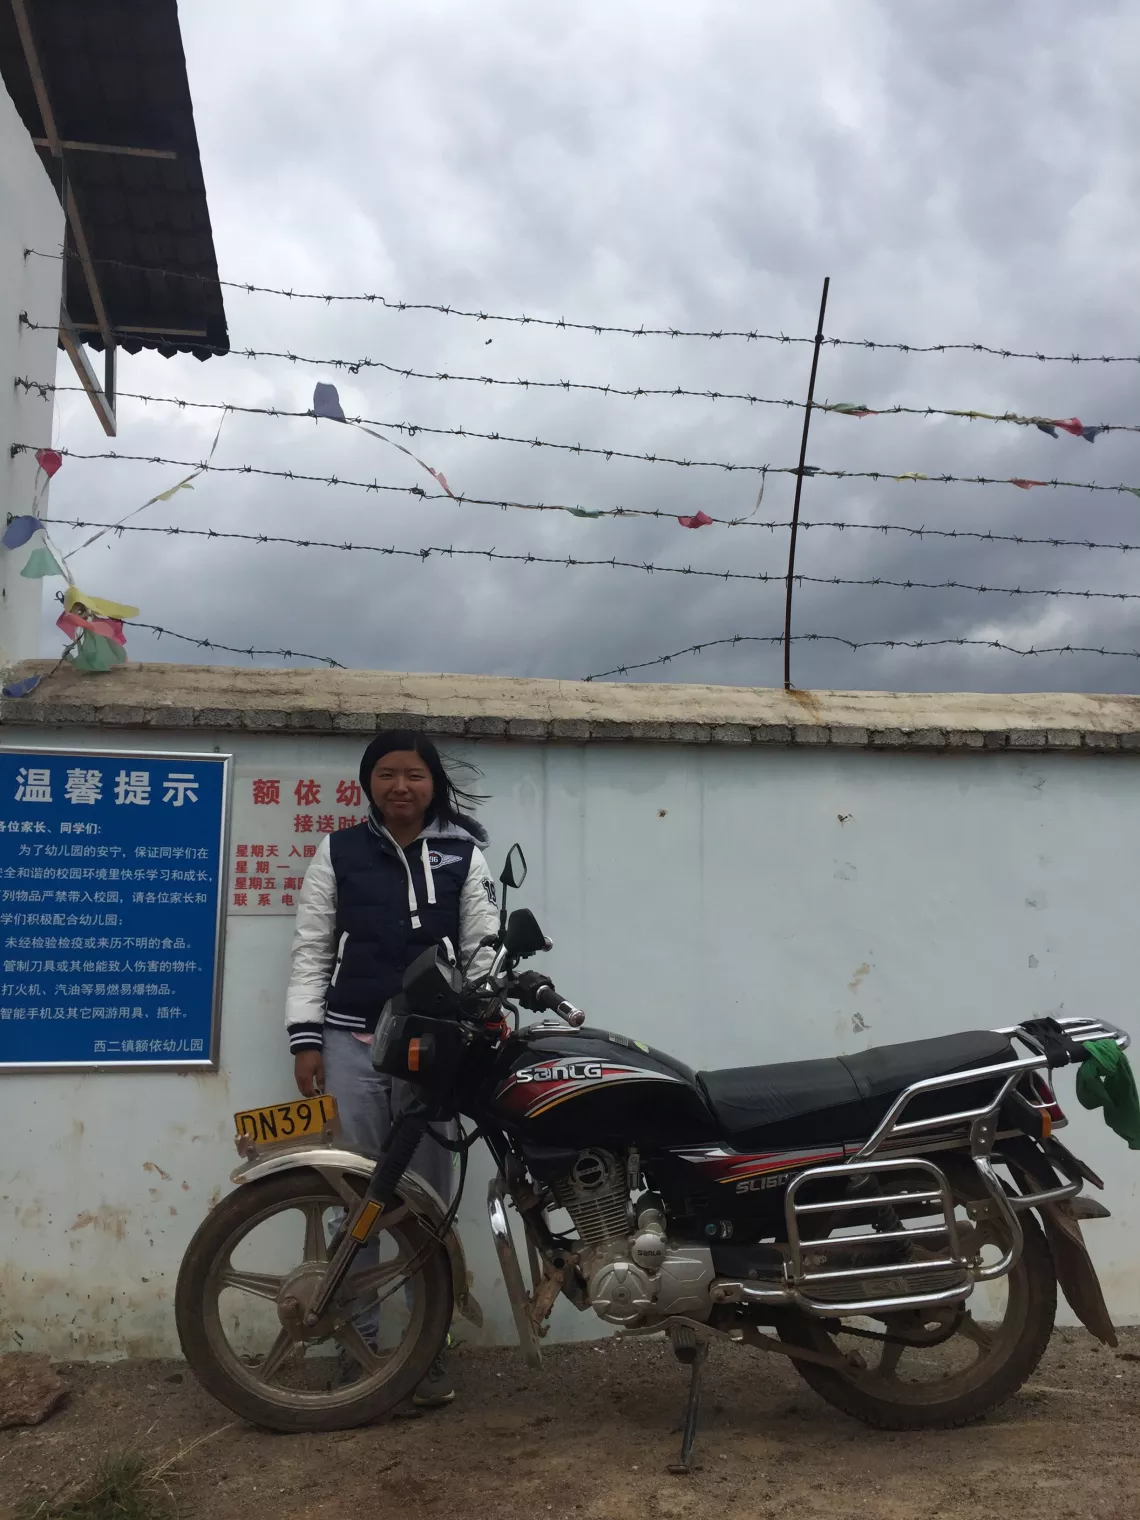 额依幼儿园的园长芳芳经常骑着摩托车去采购园里所需的用品。